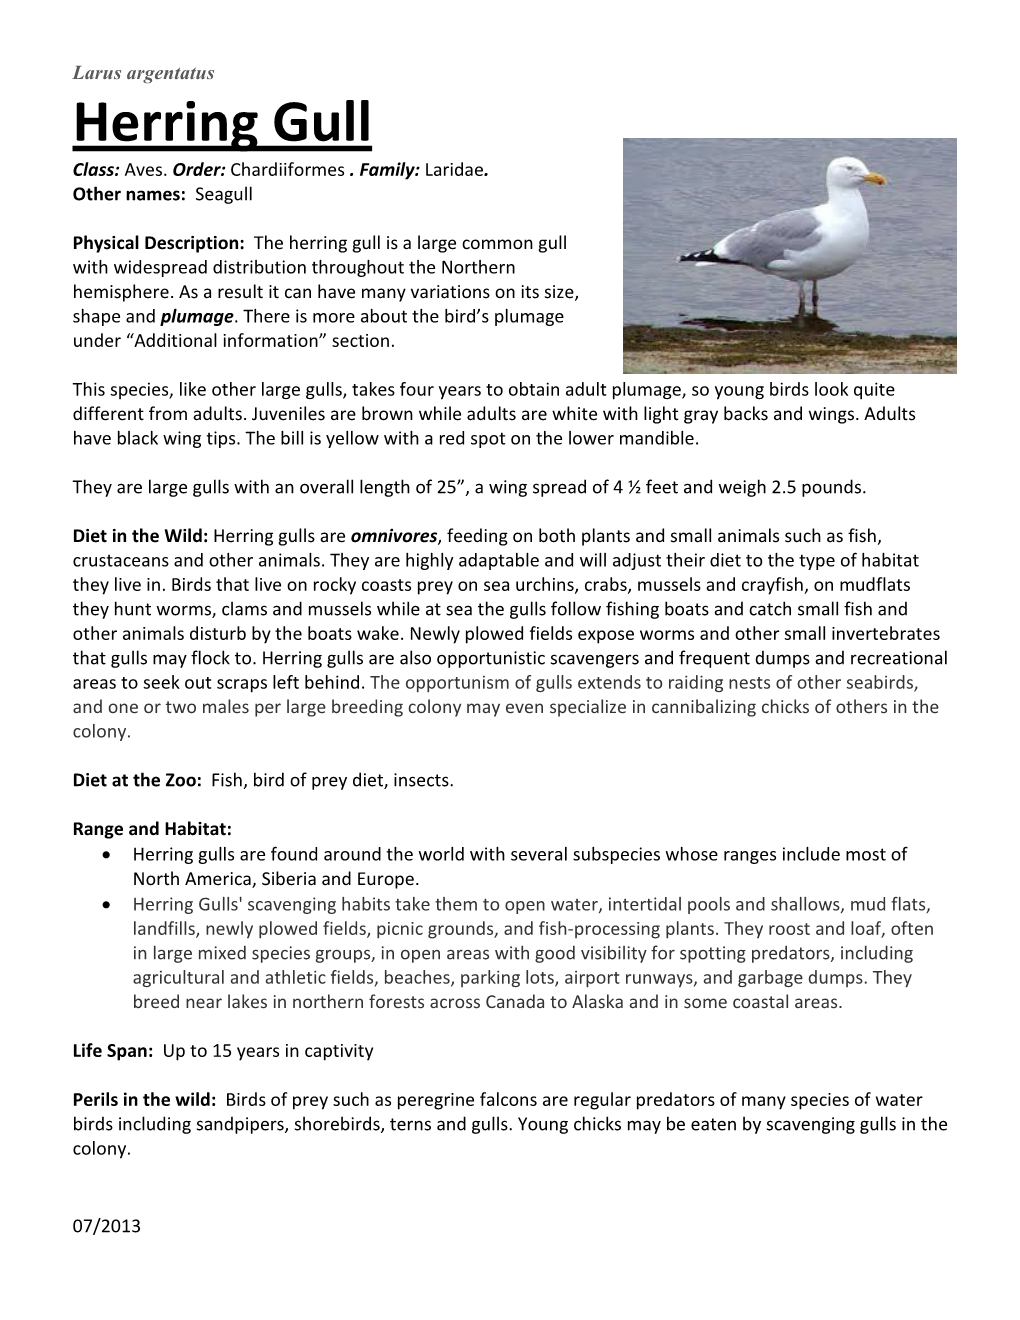 Herring Gull Class: Aves